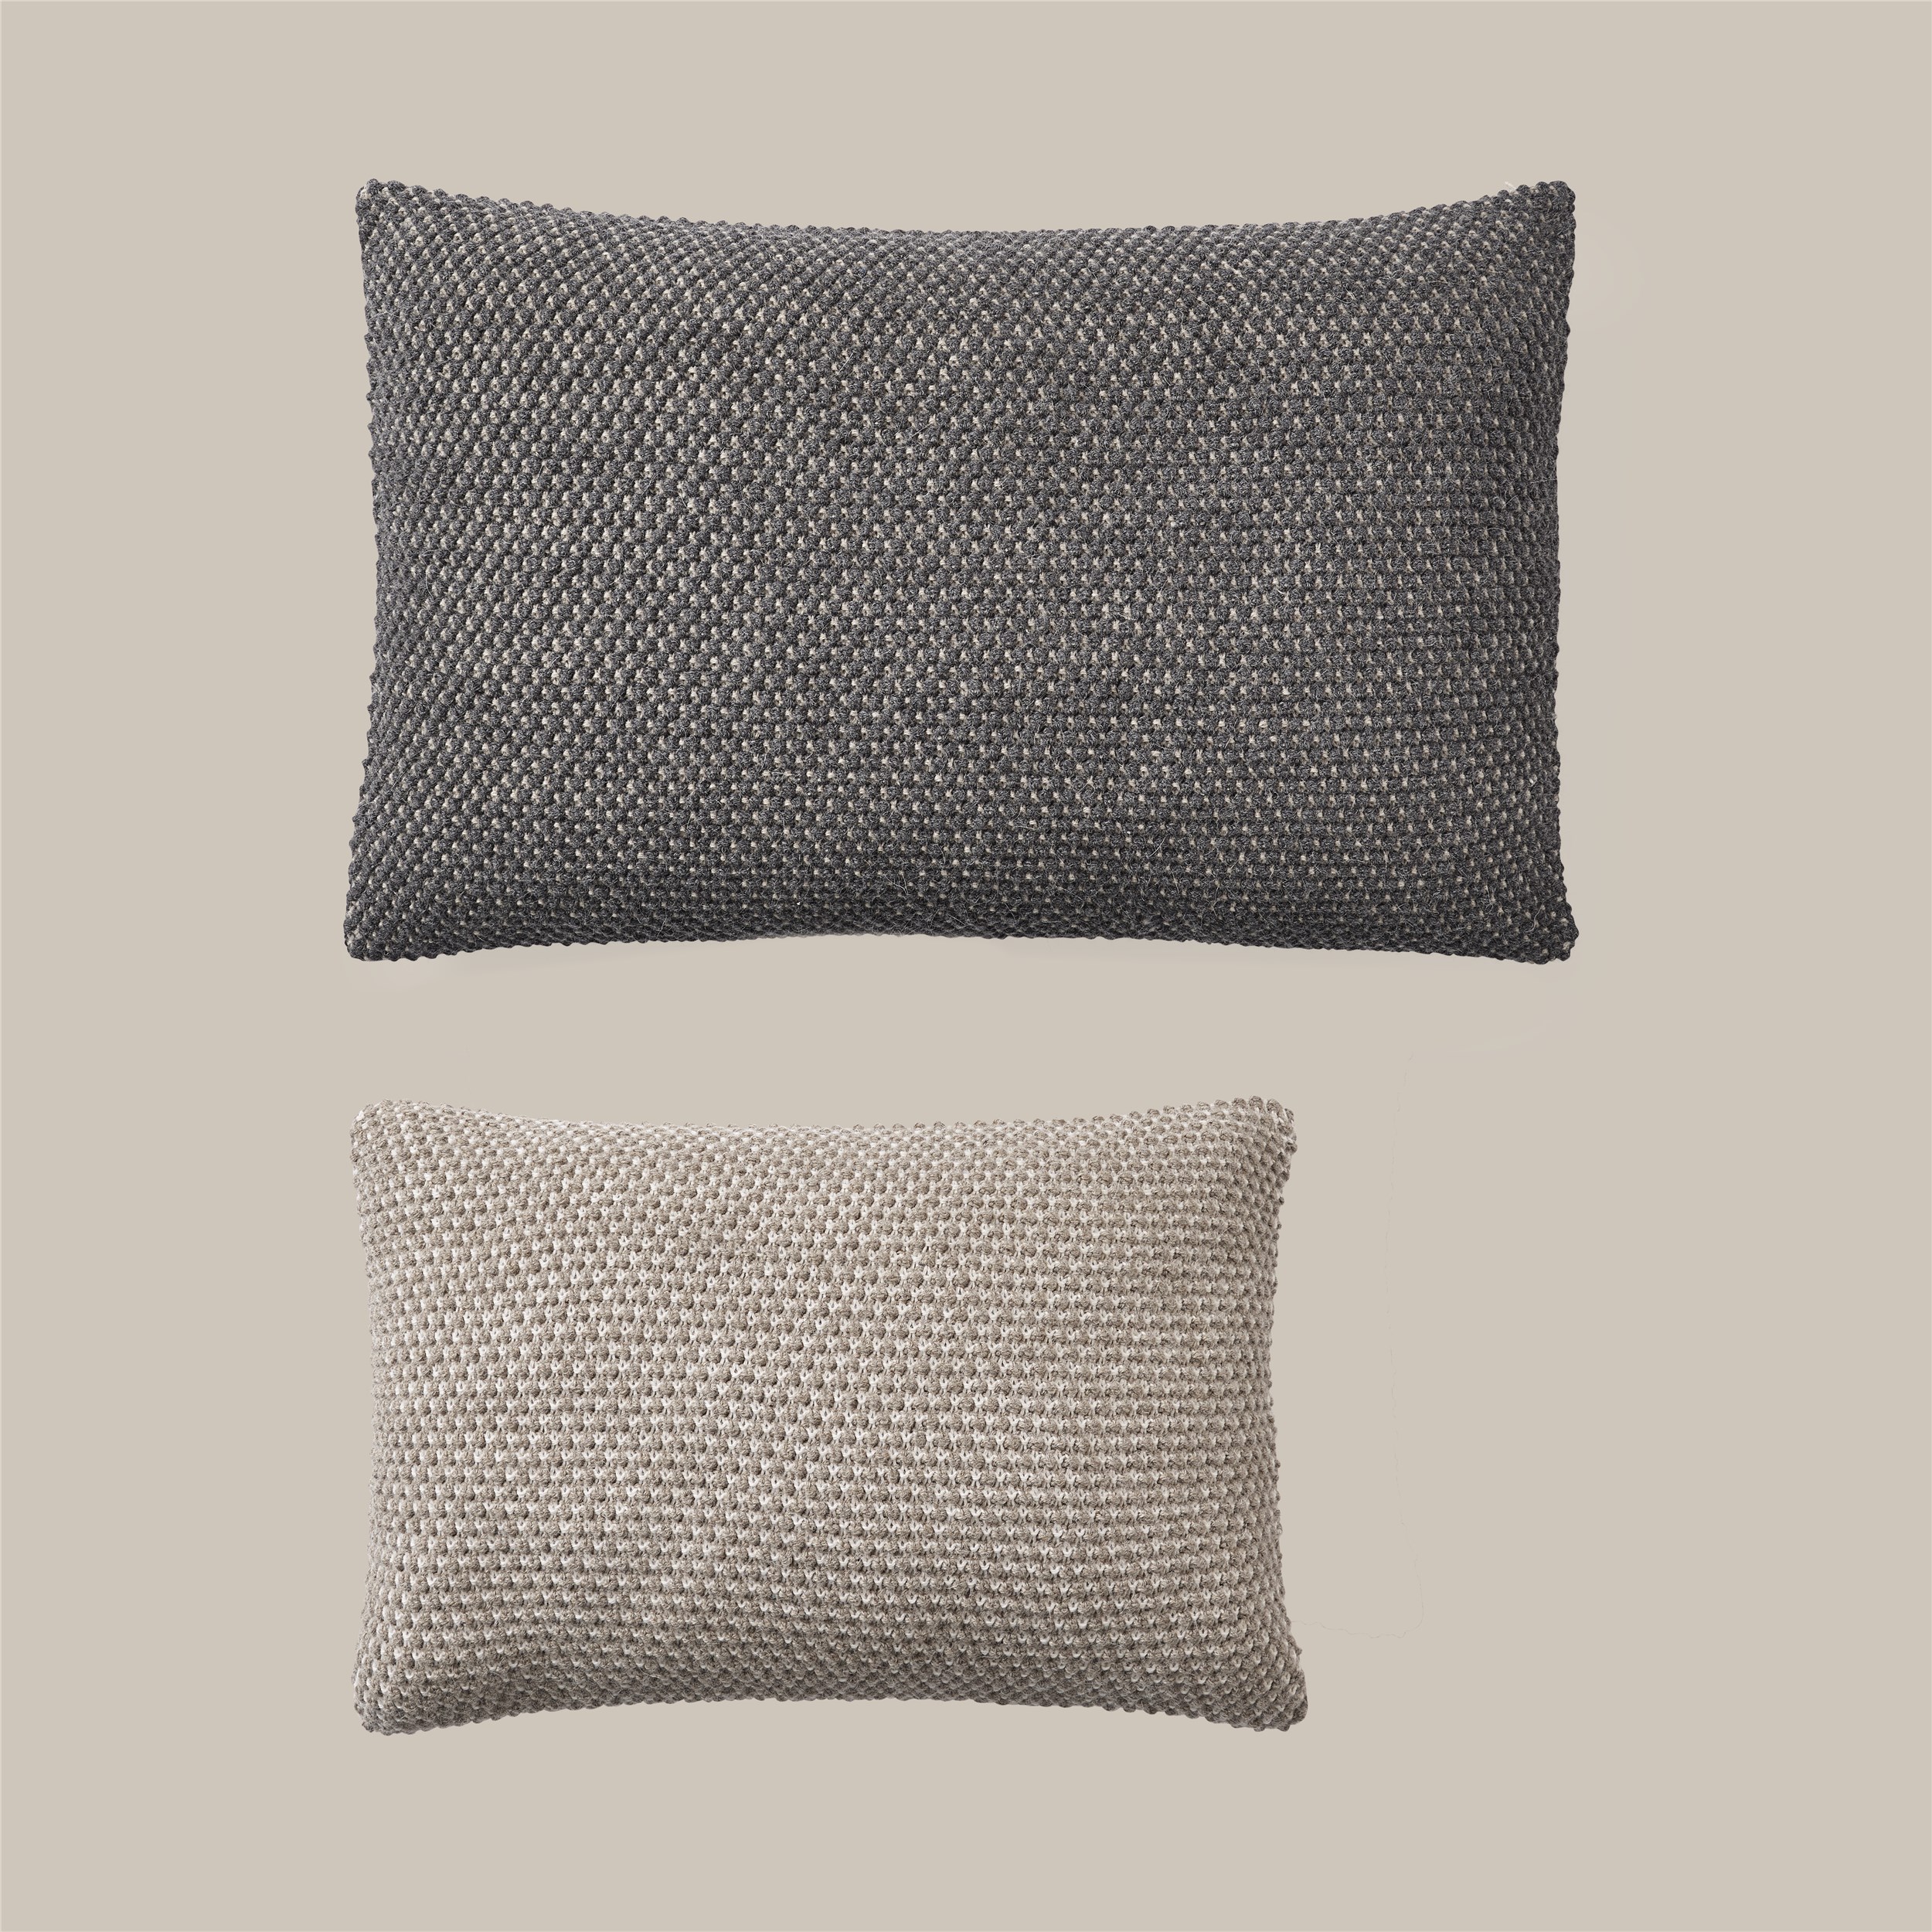 Twine cushion 80x50 dark grey